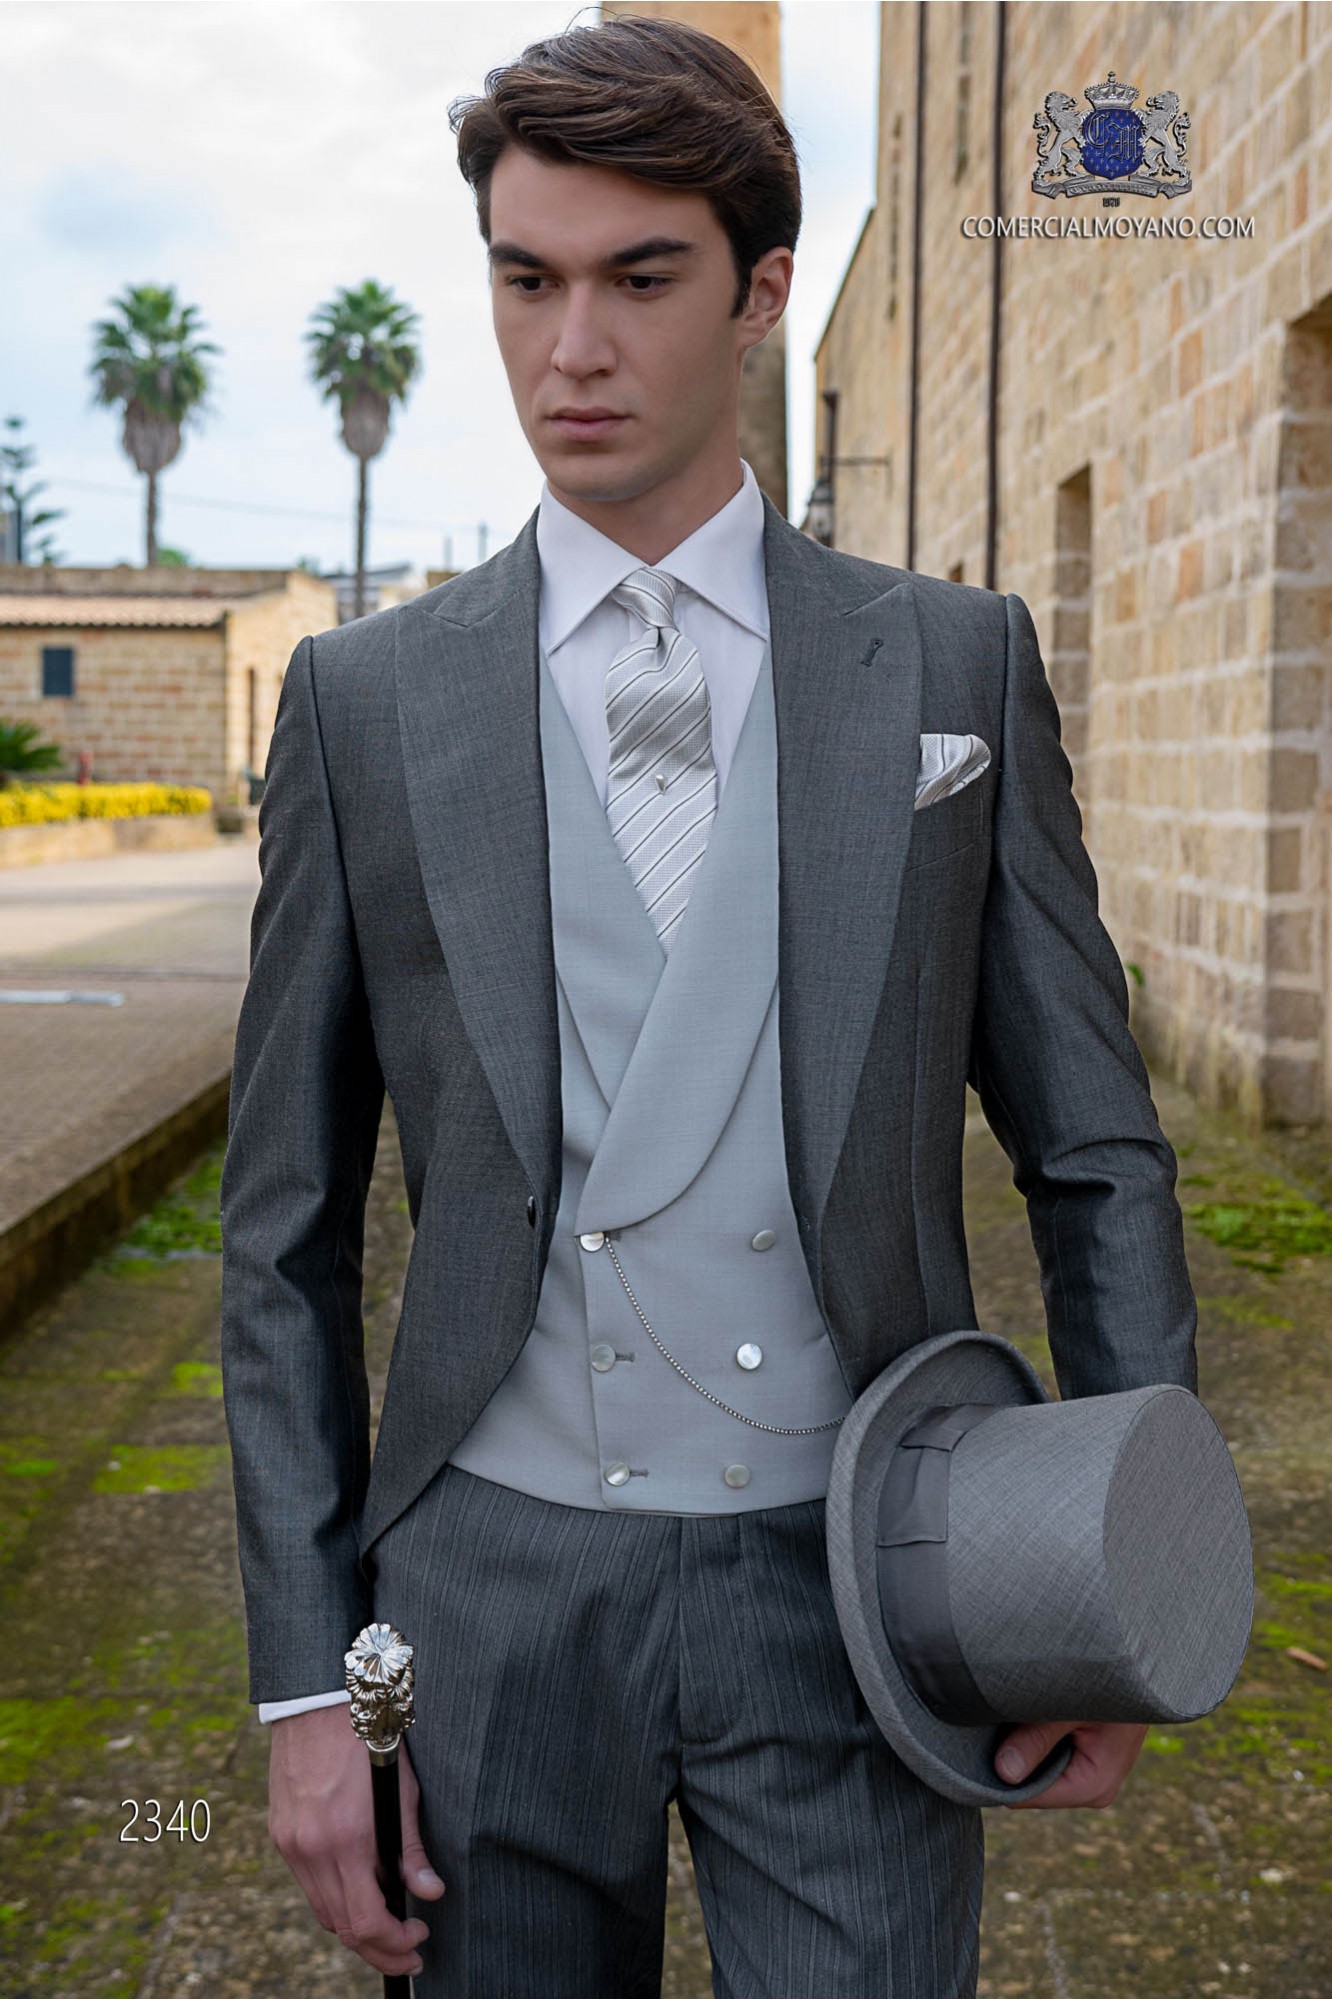 Chaqué de novio gris marengo tejido lana alpaca con pantalón raya diplomática modelo: 2340 Mario Moyano colección Gentleman